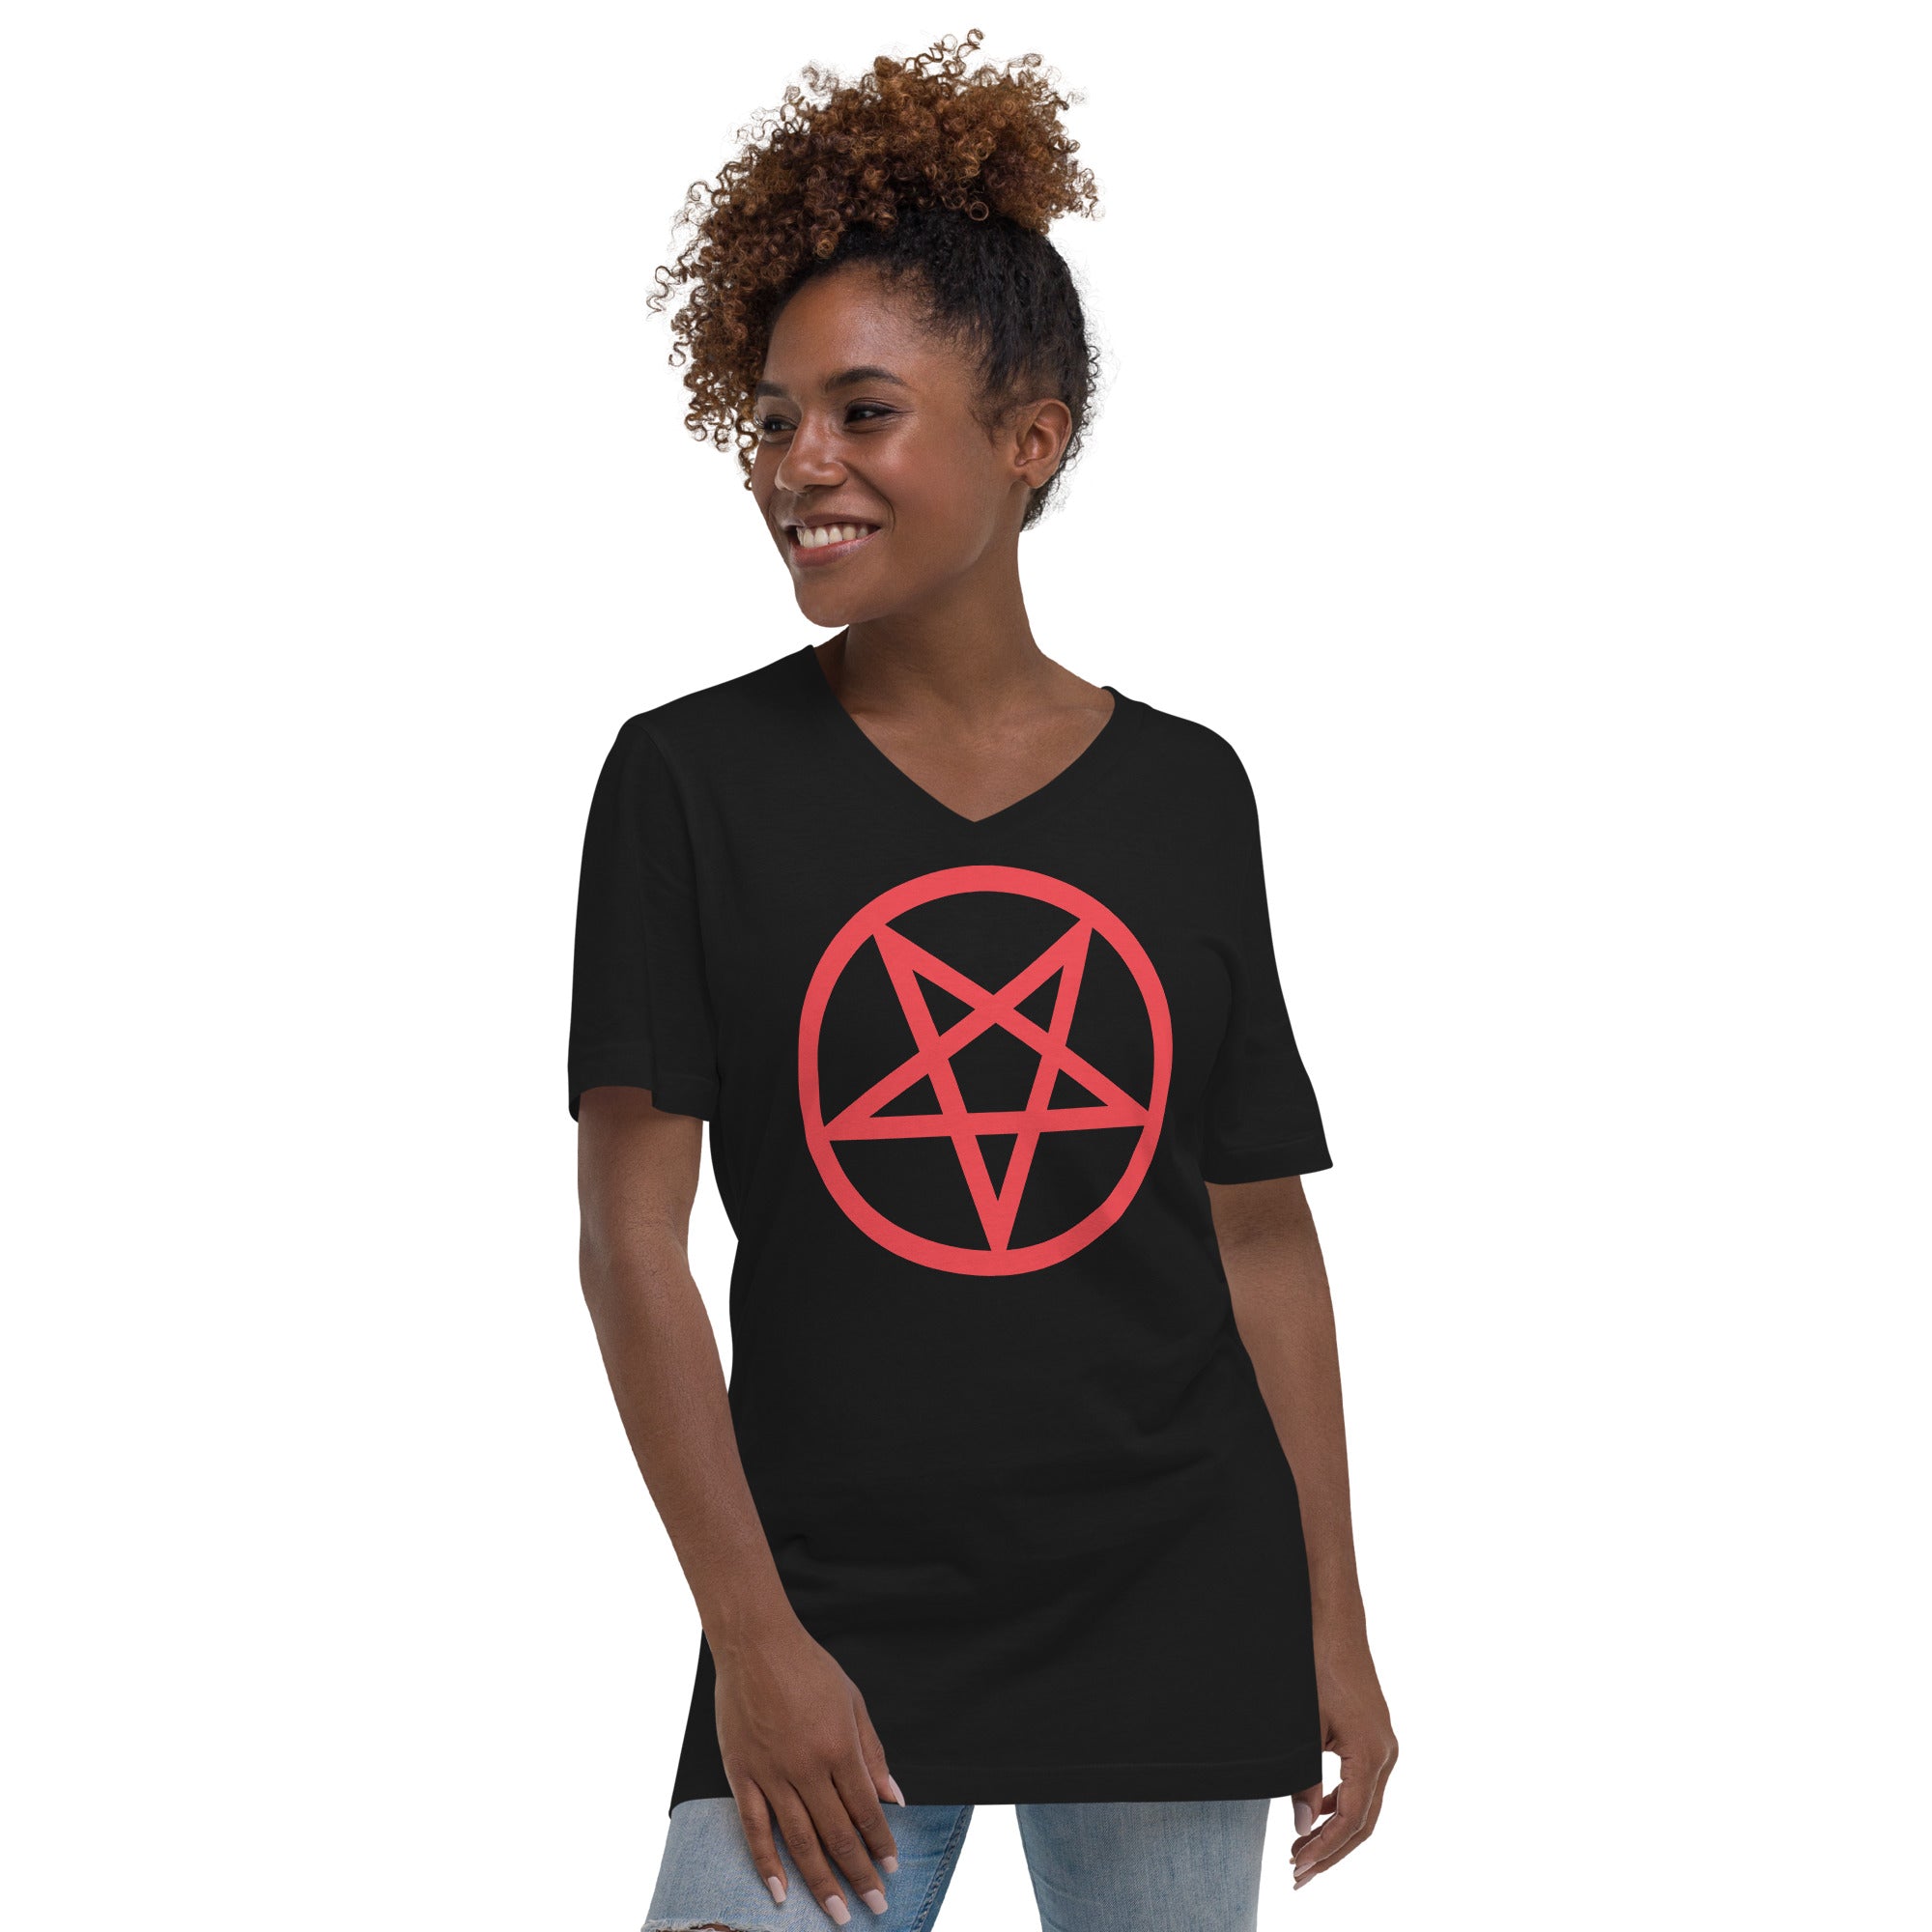 Red Classic Inverted Pentagram Occult Symbol Women’s Short Sleeve V-Neck T-Shirt